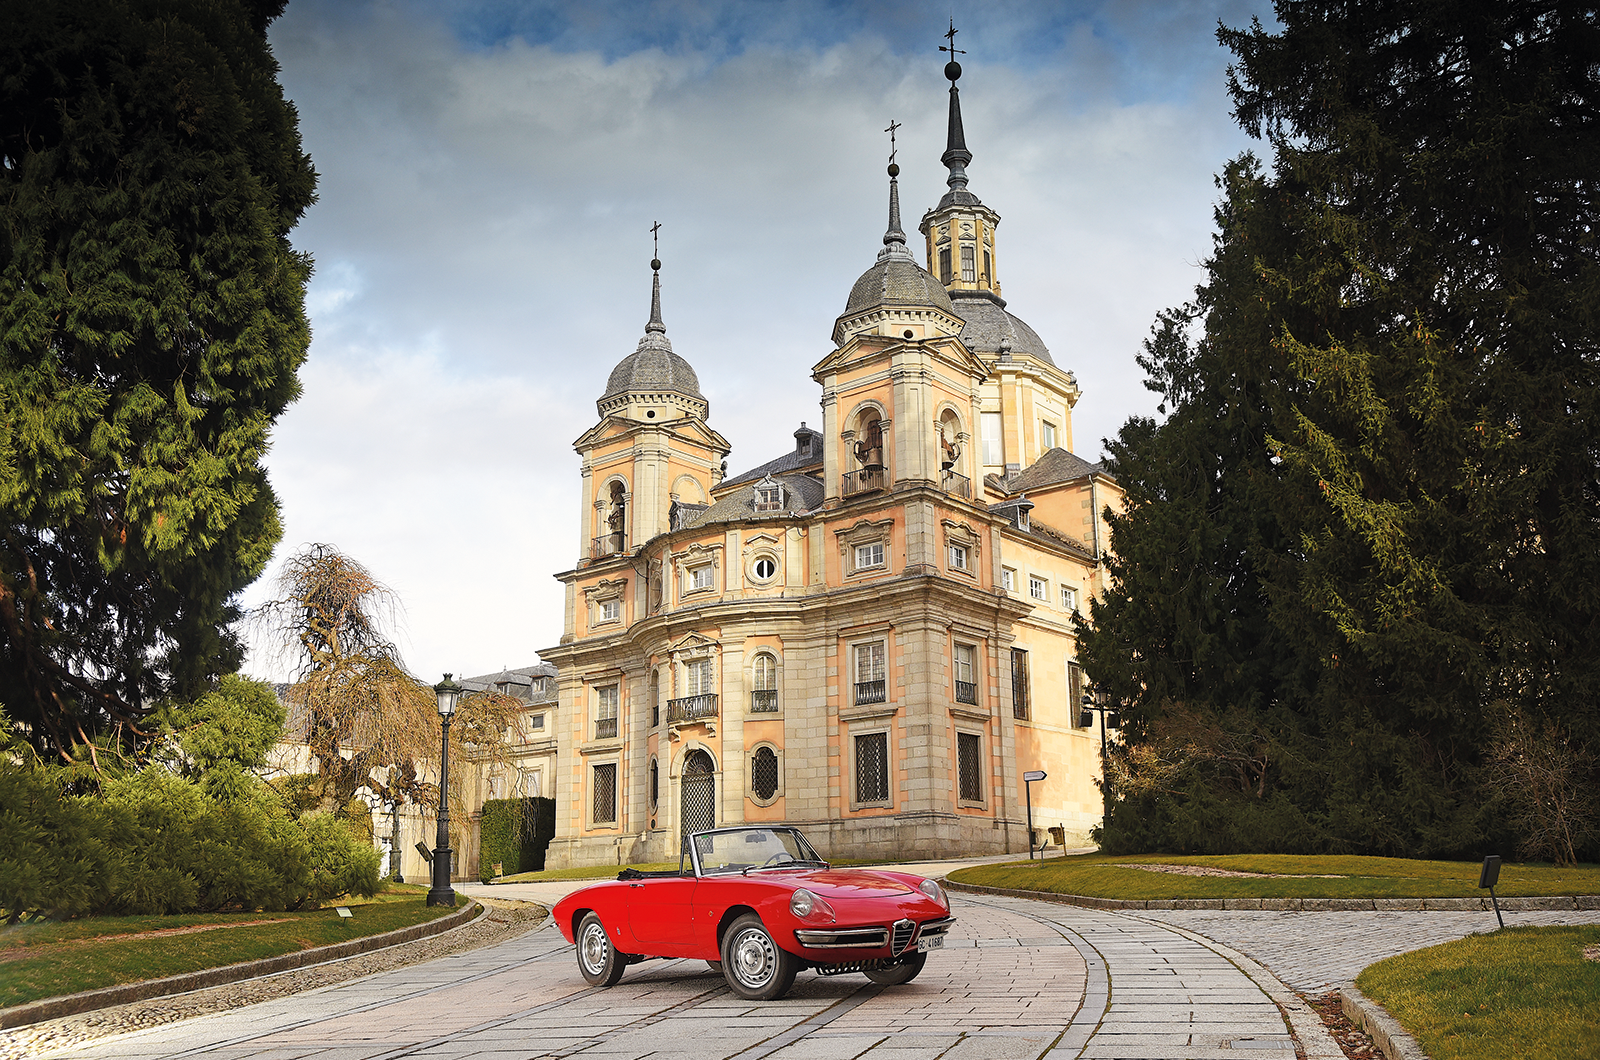 Classic & Sports Car – Dream drive: Alfa Romeo Duetto 1600